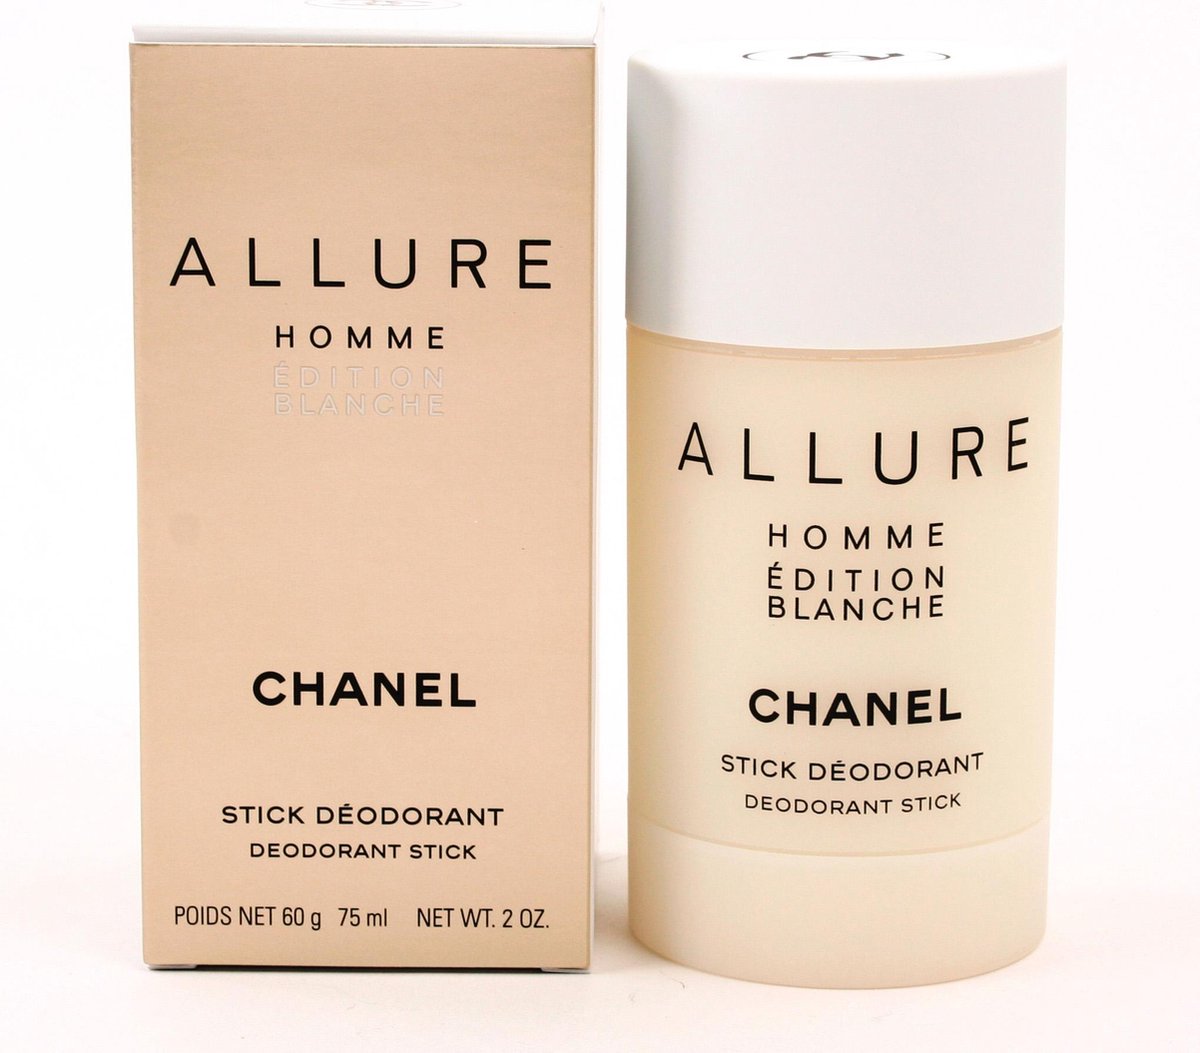 CHANEL (ALLURE HOMME ÉDITION BLANCHE) Eau de Parfum Spray (100ml) | Harrods  US